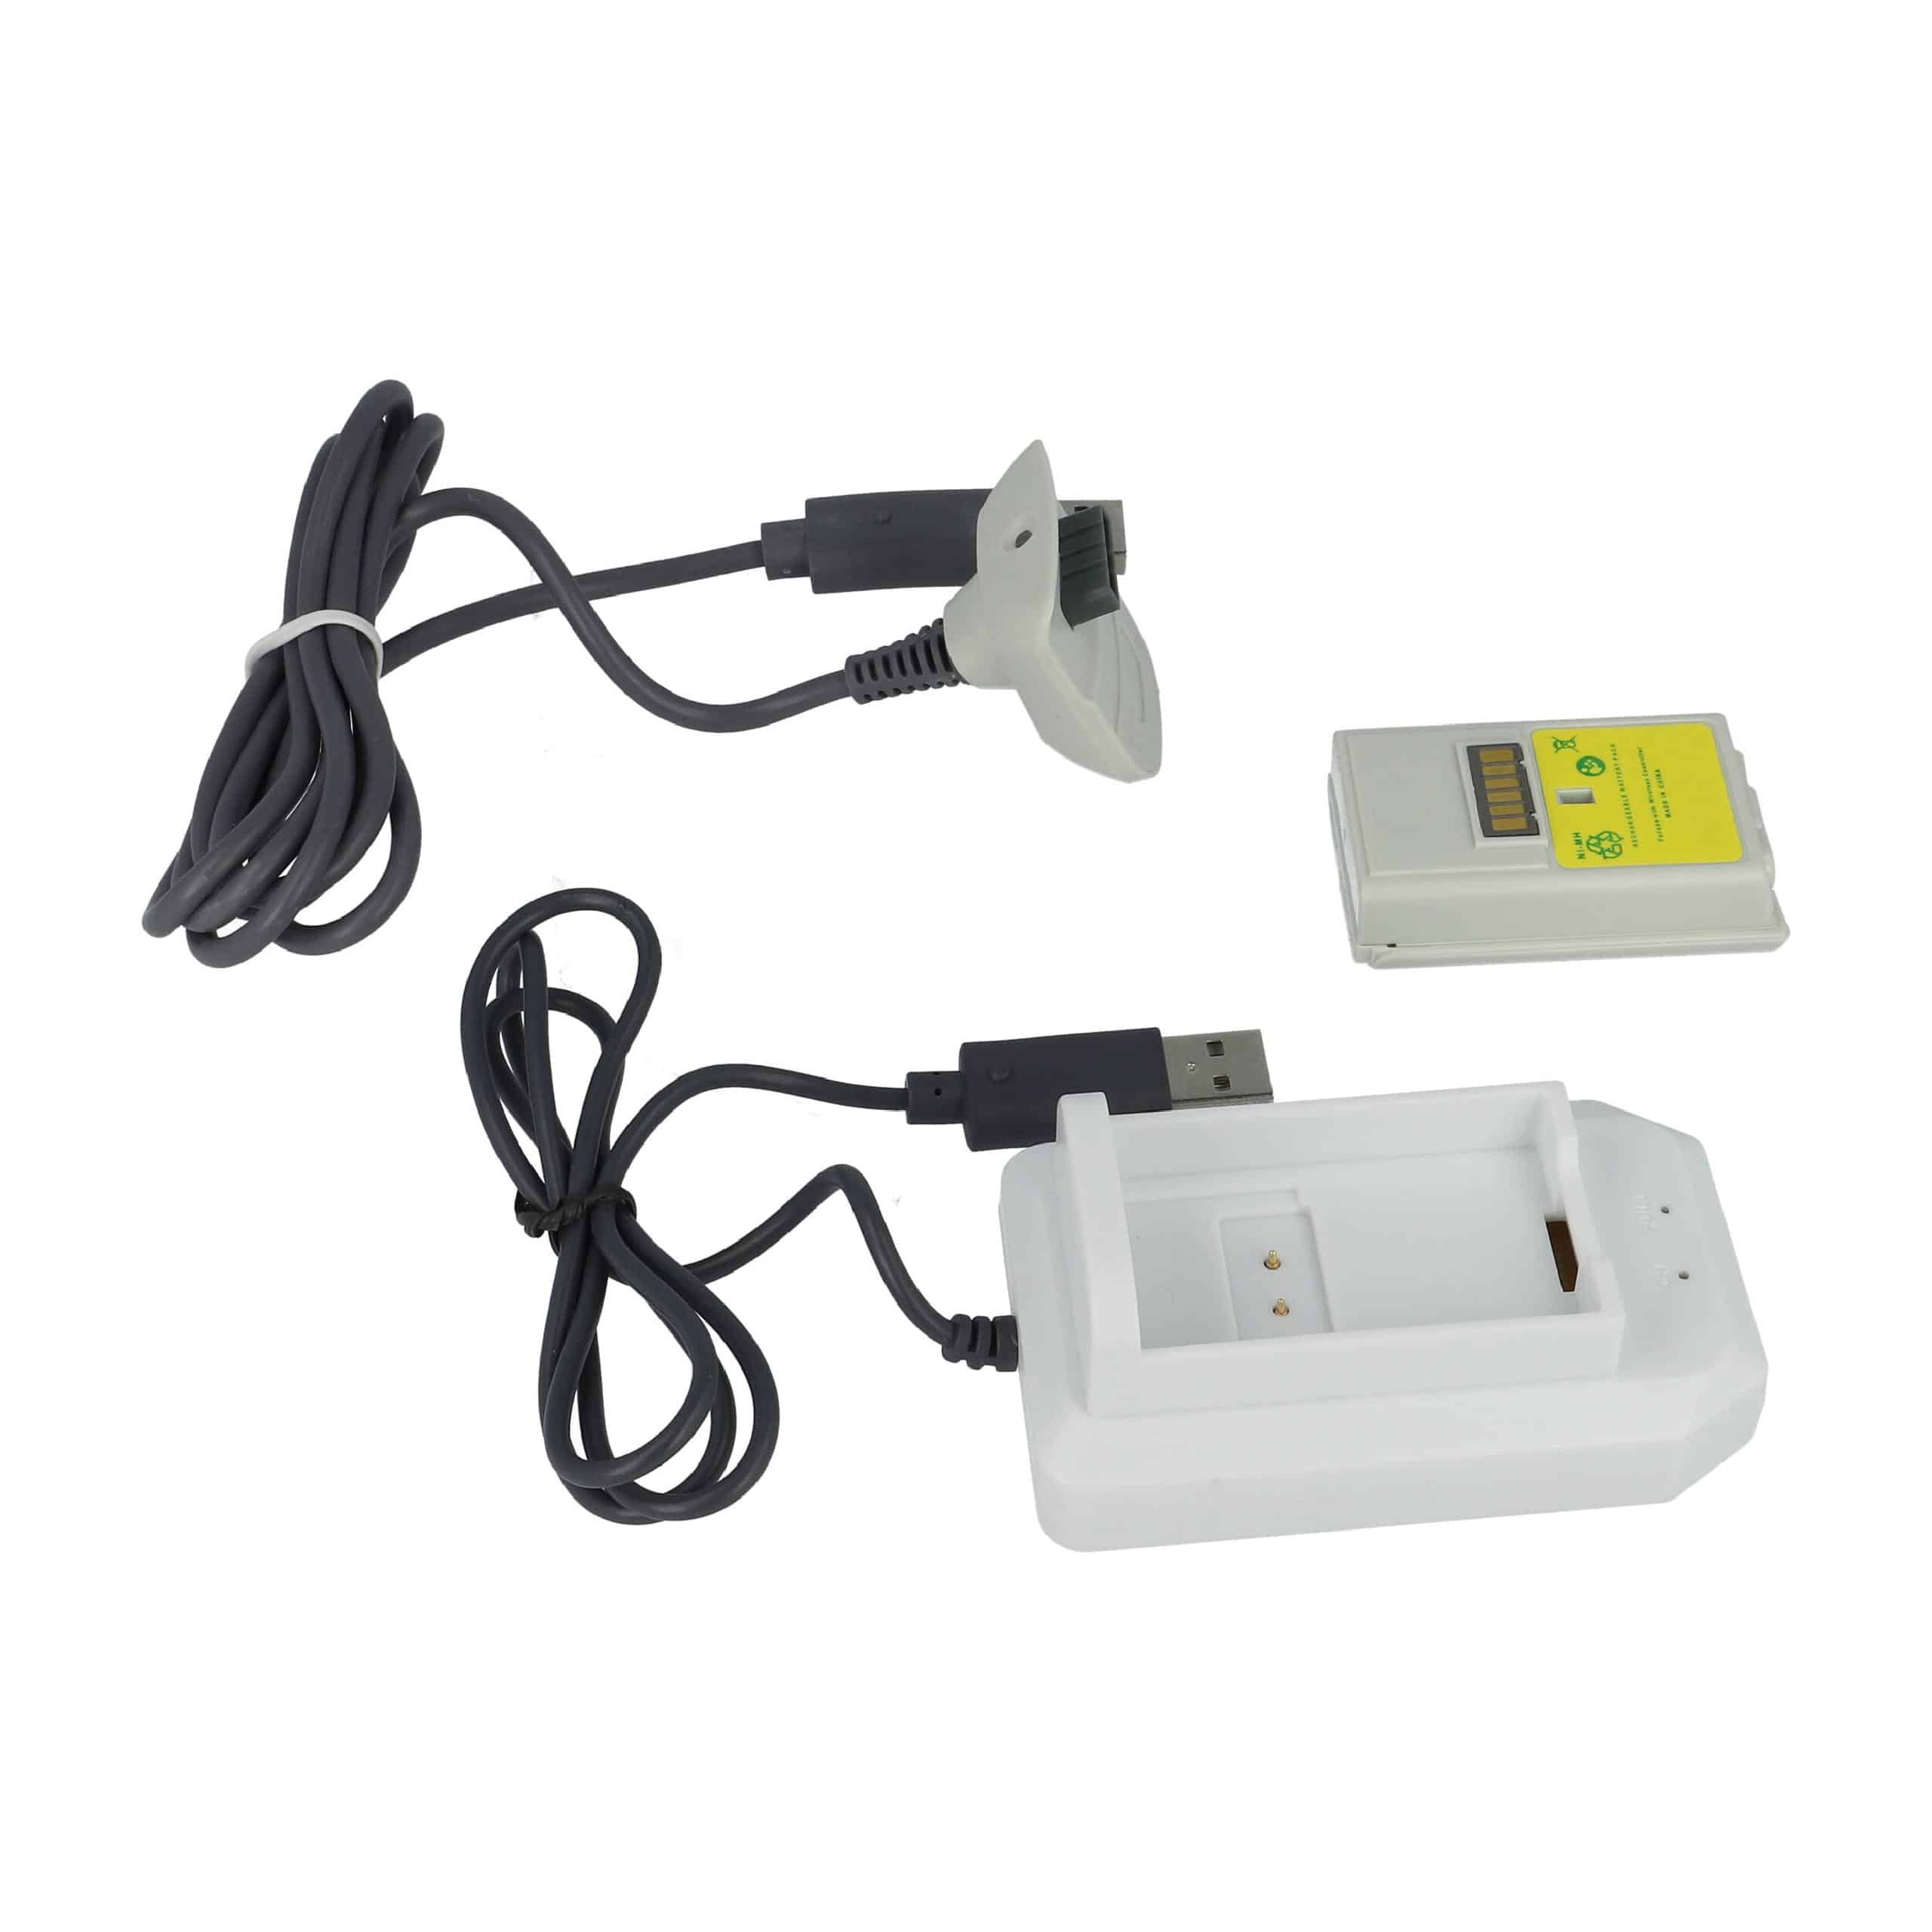 Zestaw Play&Charge Kit Microsoft Xbox 360 - 1x ładowarka, 1x przewód zasilający, 1x akumulator, czarny / biały